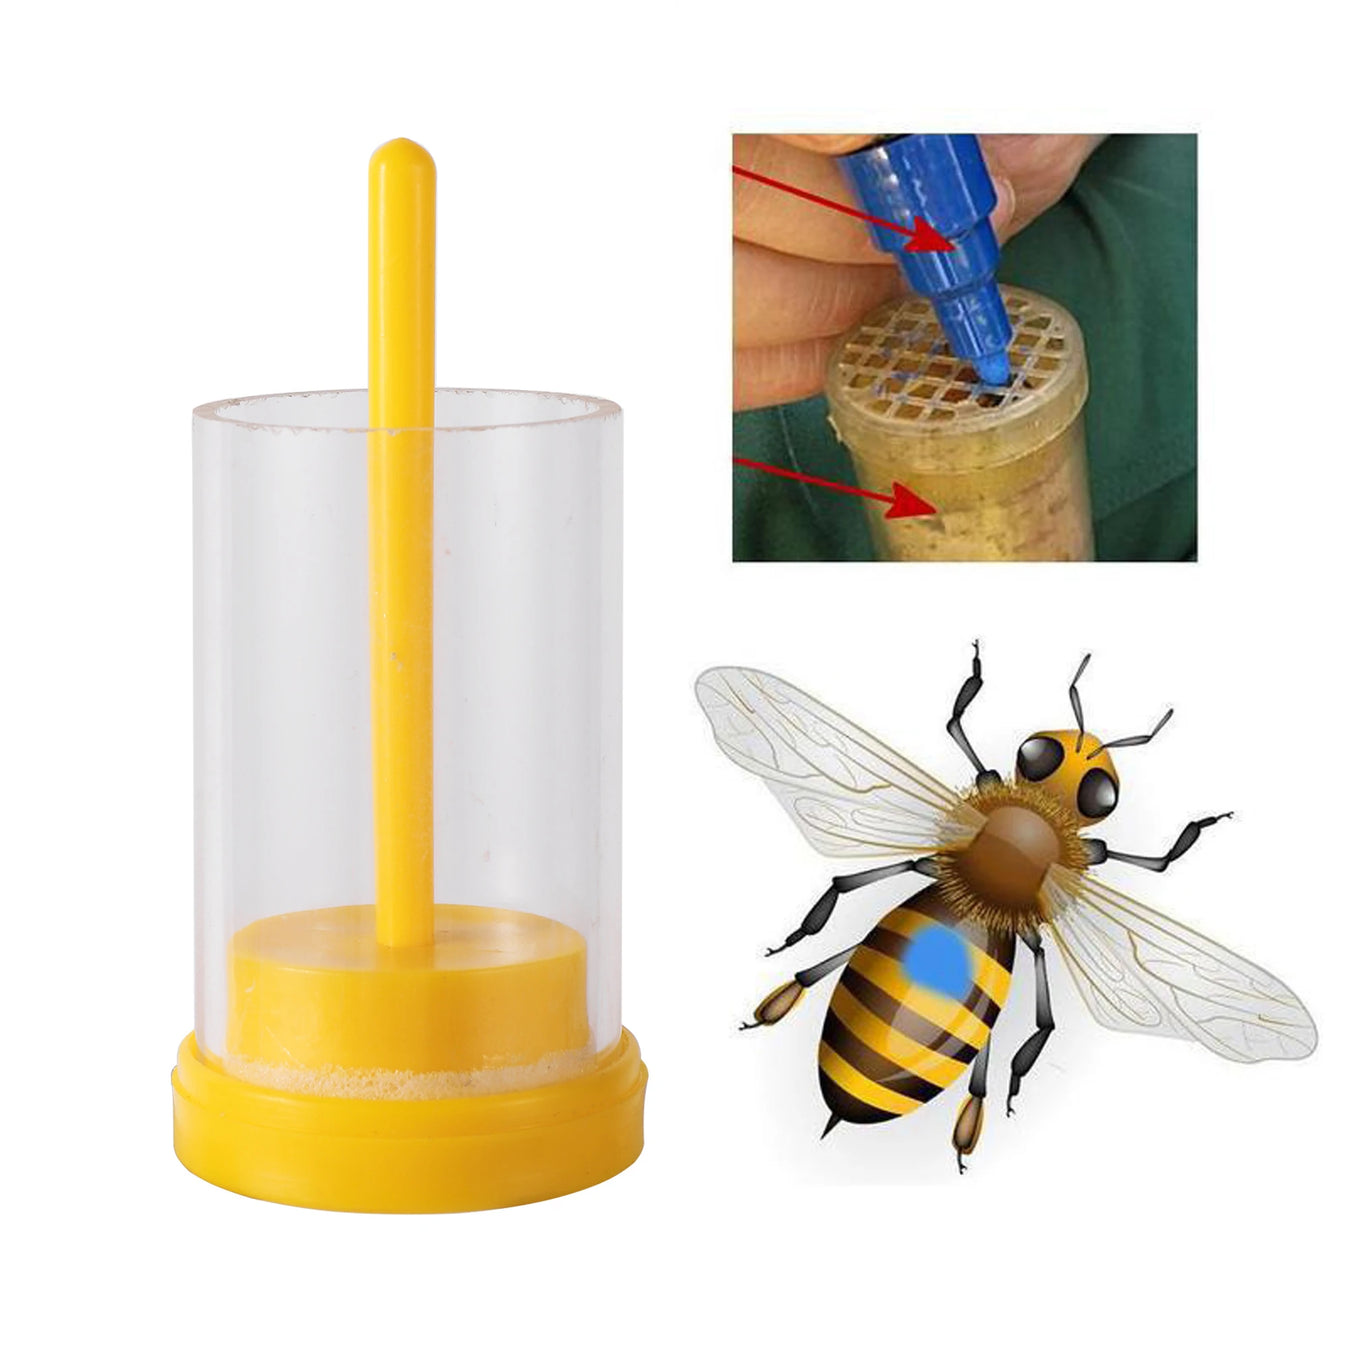 Beekeeper's Queen Bee Marking Set for Effortless Identification